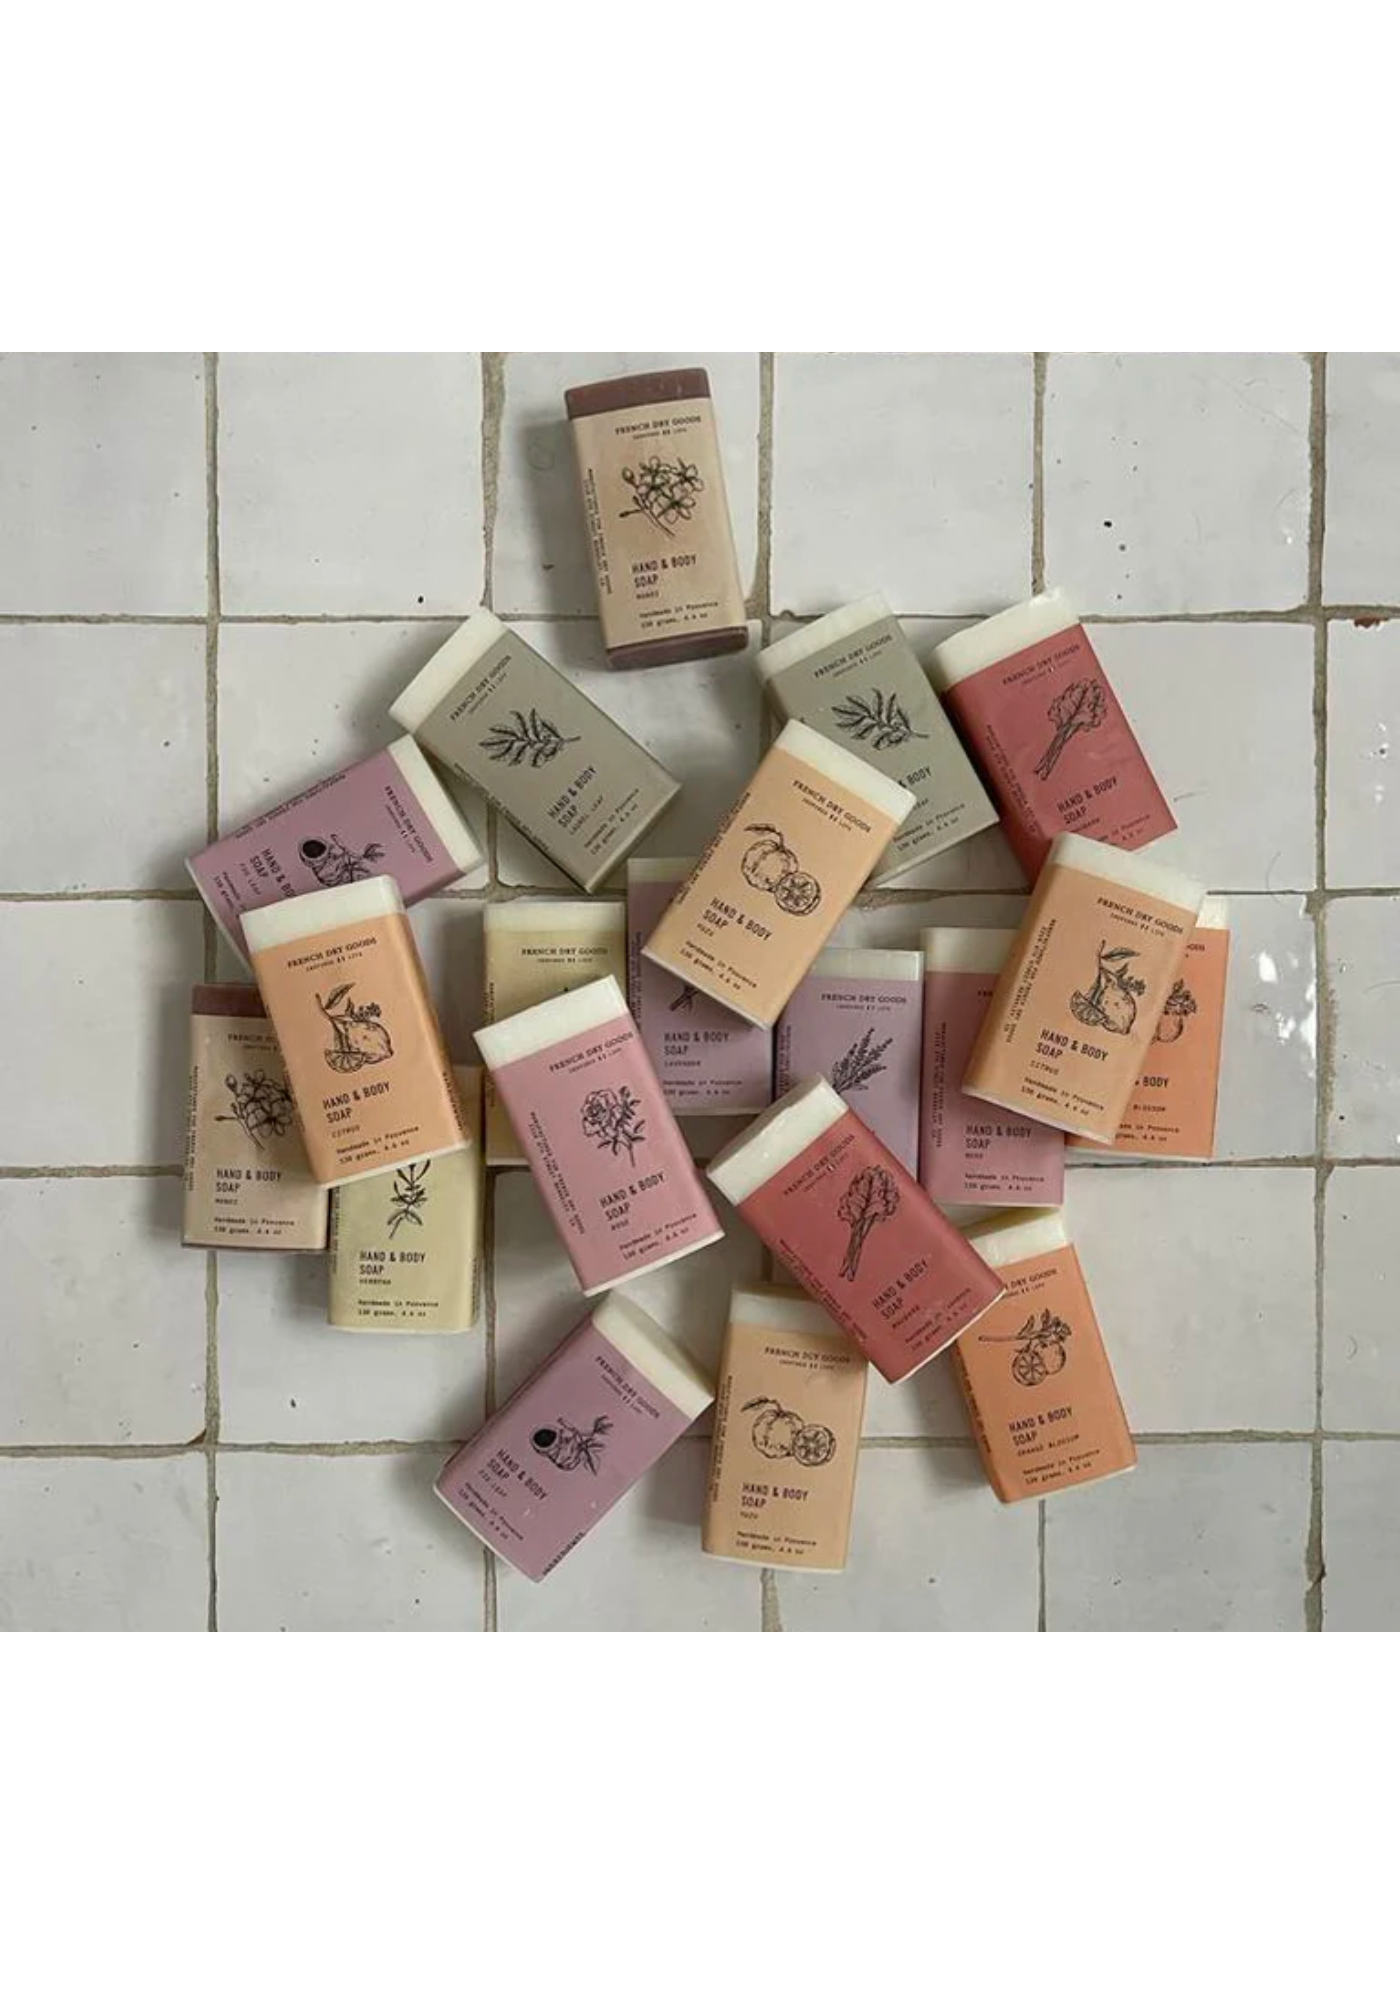 Verbena Bar Soap